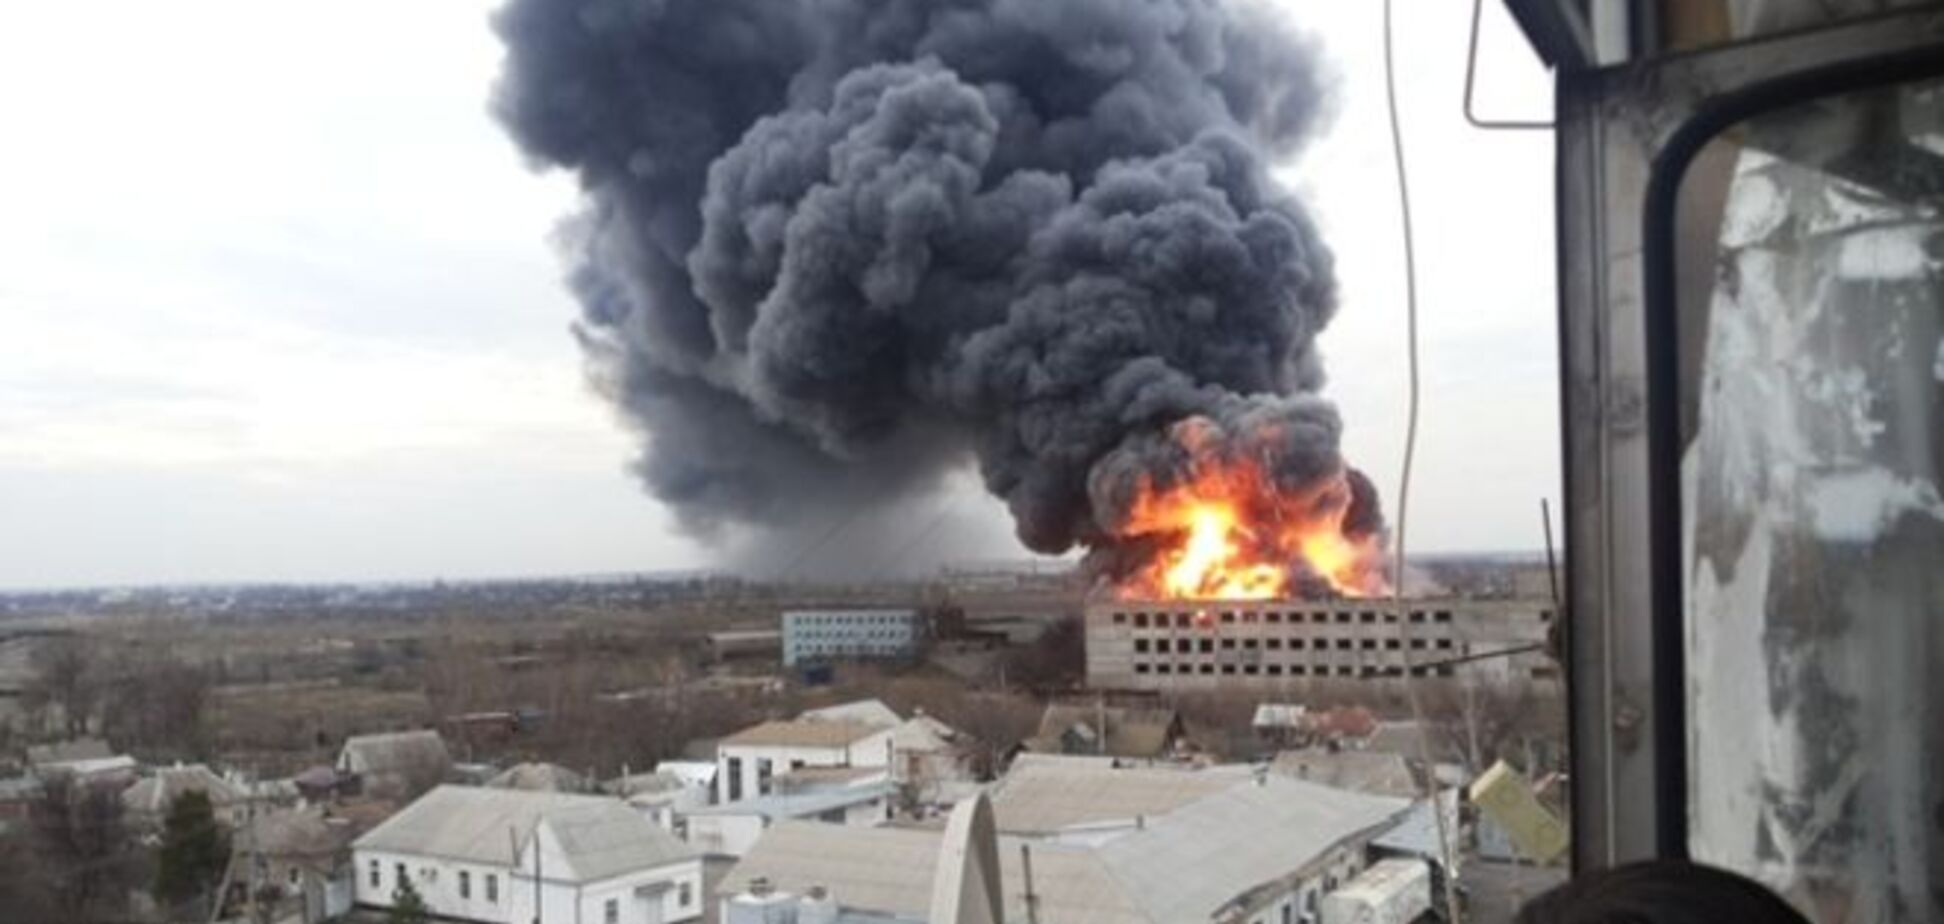 В ГосЧС сообщили подробности масштабного пожара на заводе в Новомосковске